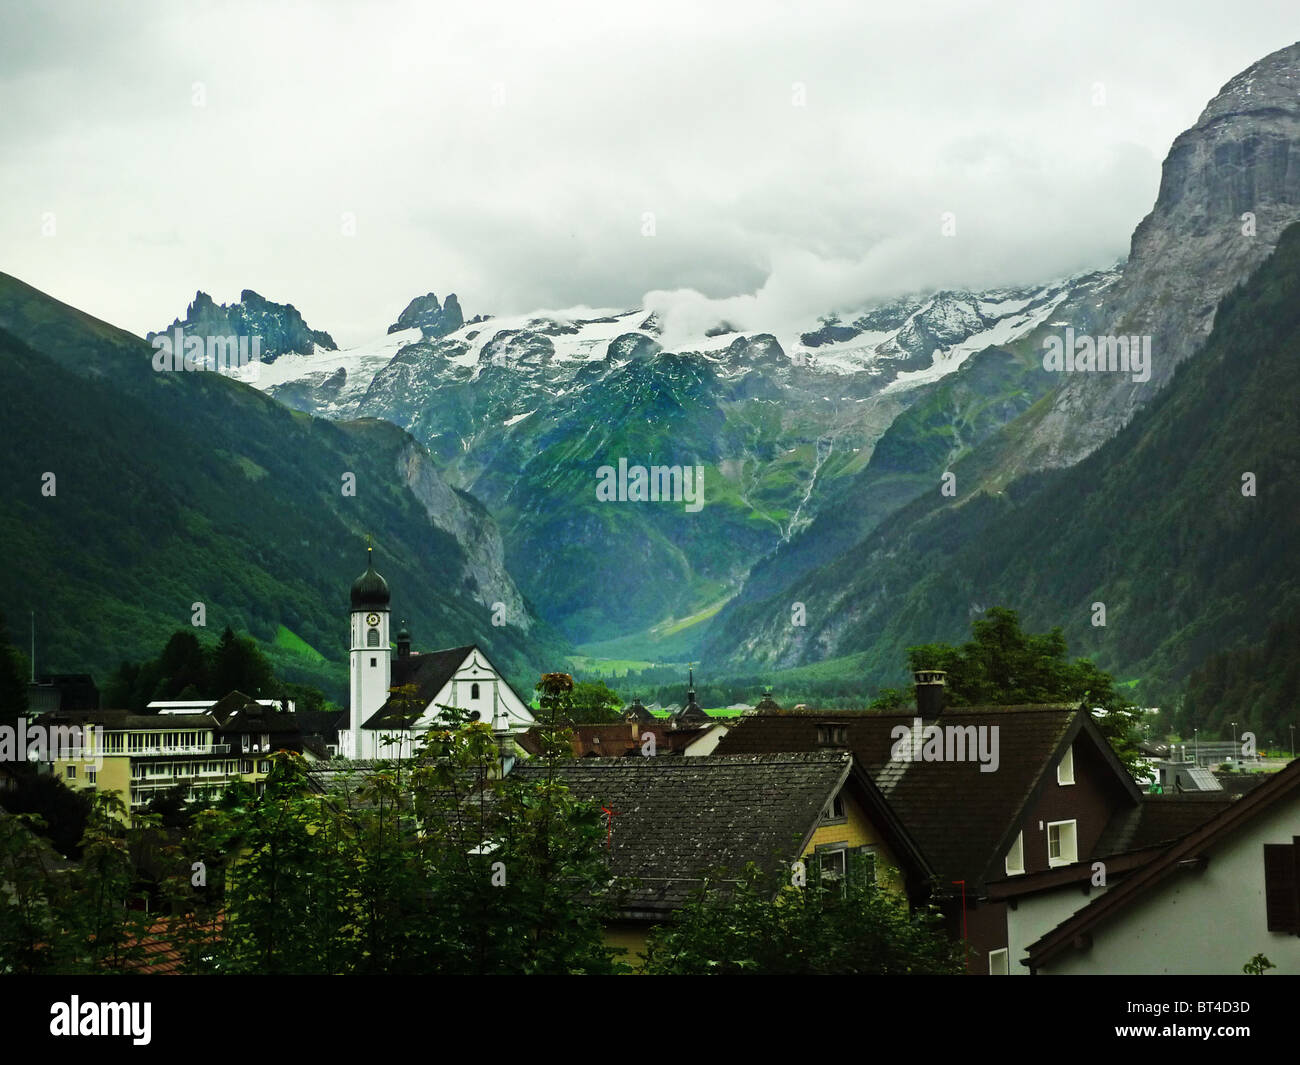 La Svizzera Engelberg alpi del paesaggio di montagna monastero formaggio funivia tranvia aerea con elevatore villaggio di picco ghiacciaio piuttosto di bellezza Foto Stock